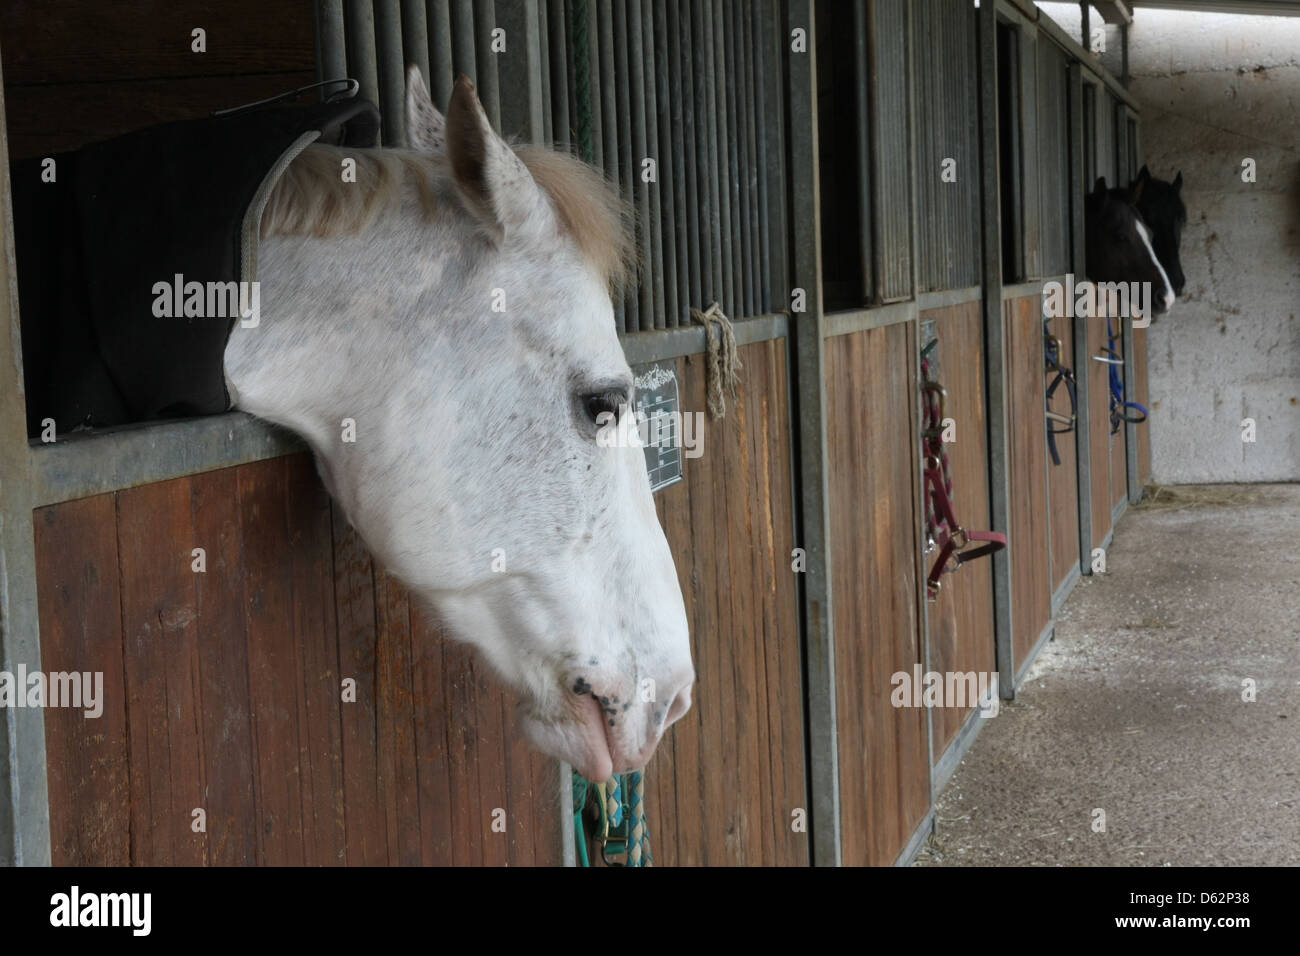 Etalons cheval puissant dans l'enceinte d'une grange d'une école d'équitation Banque D'Images